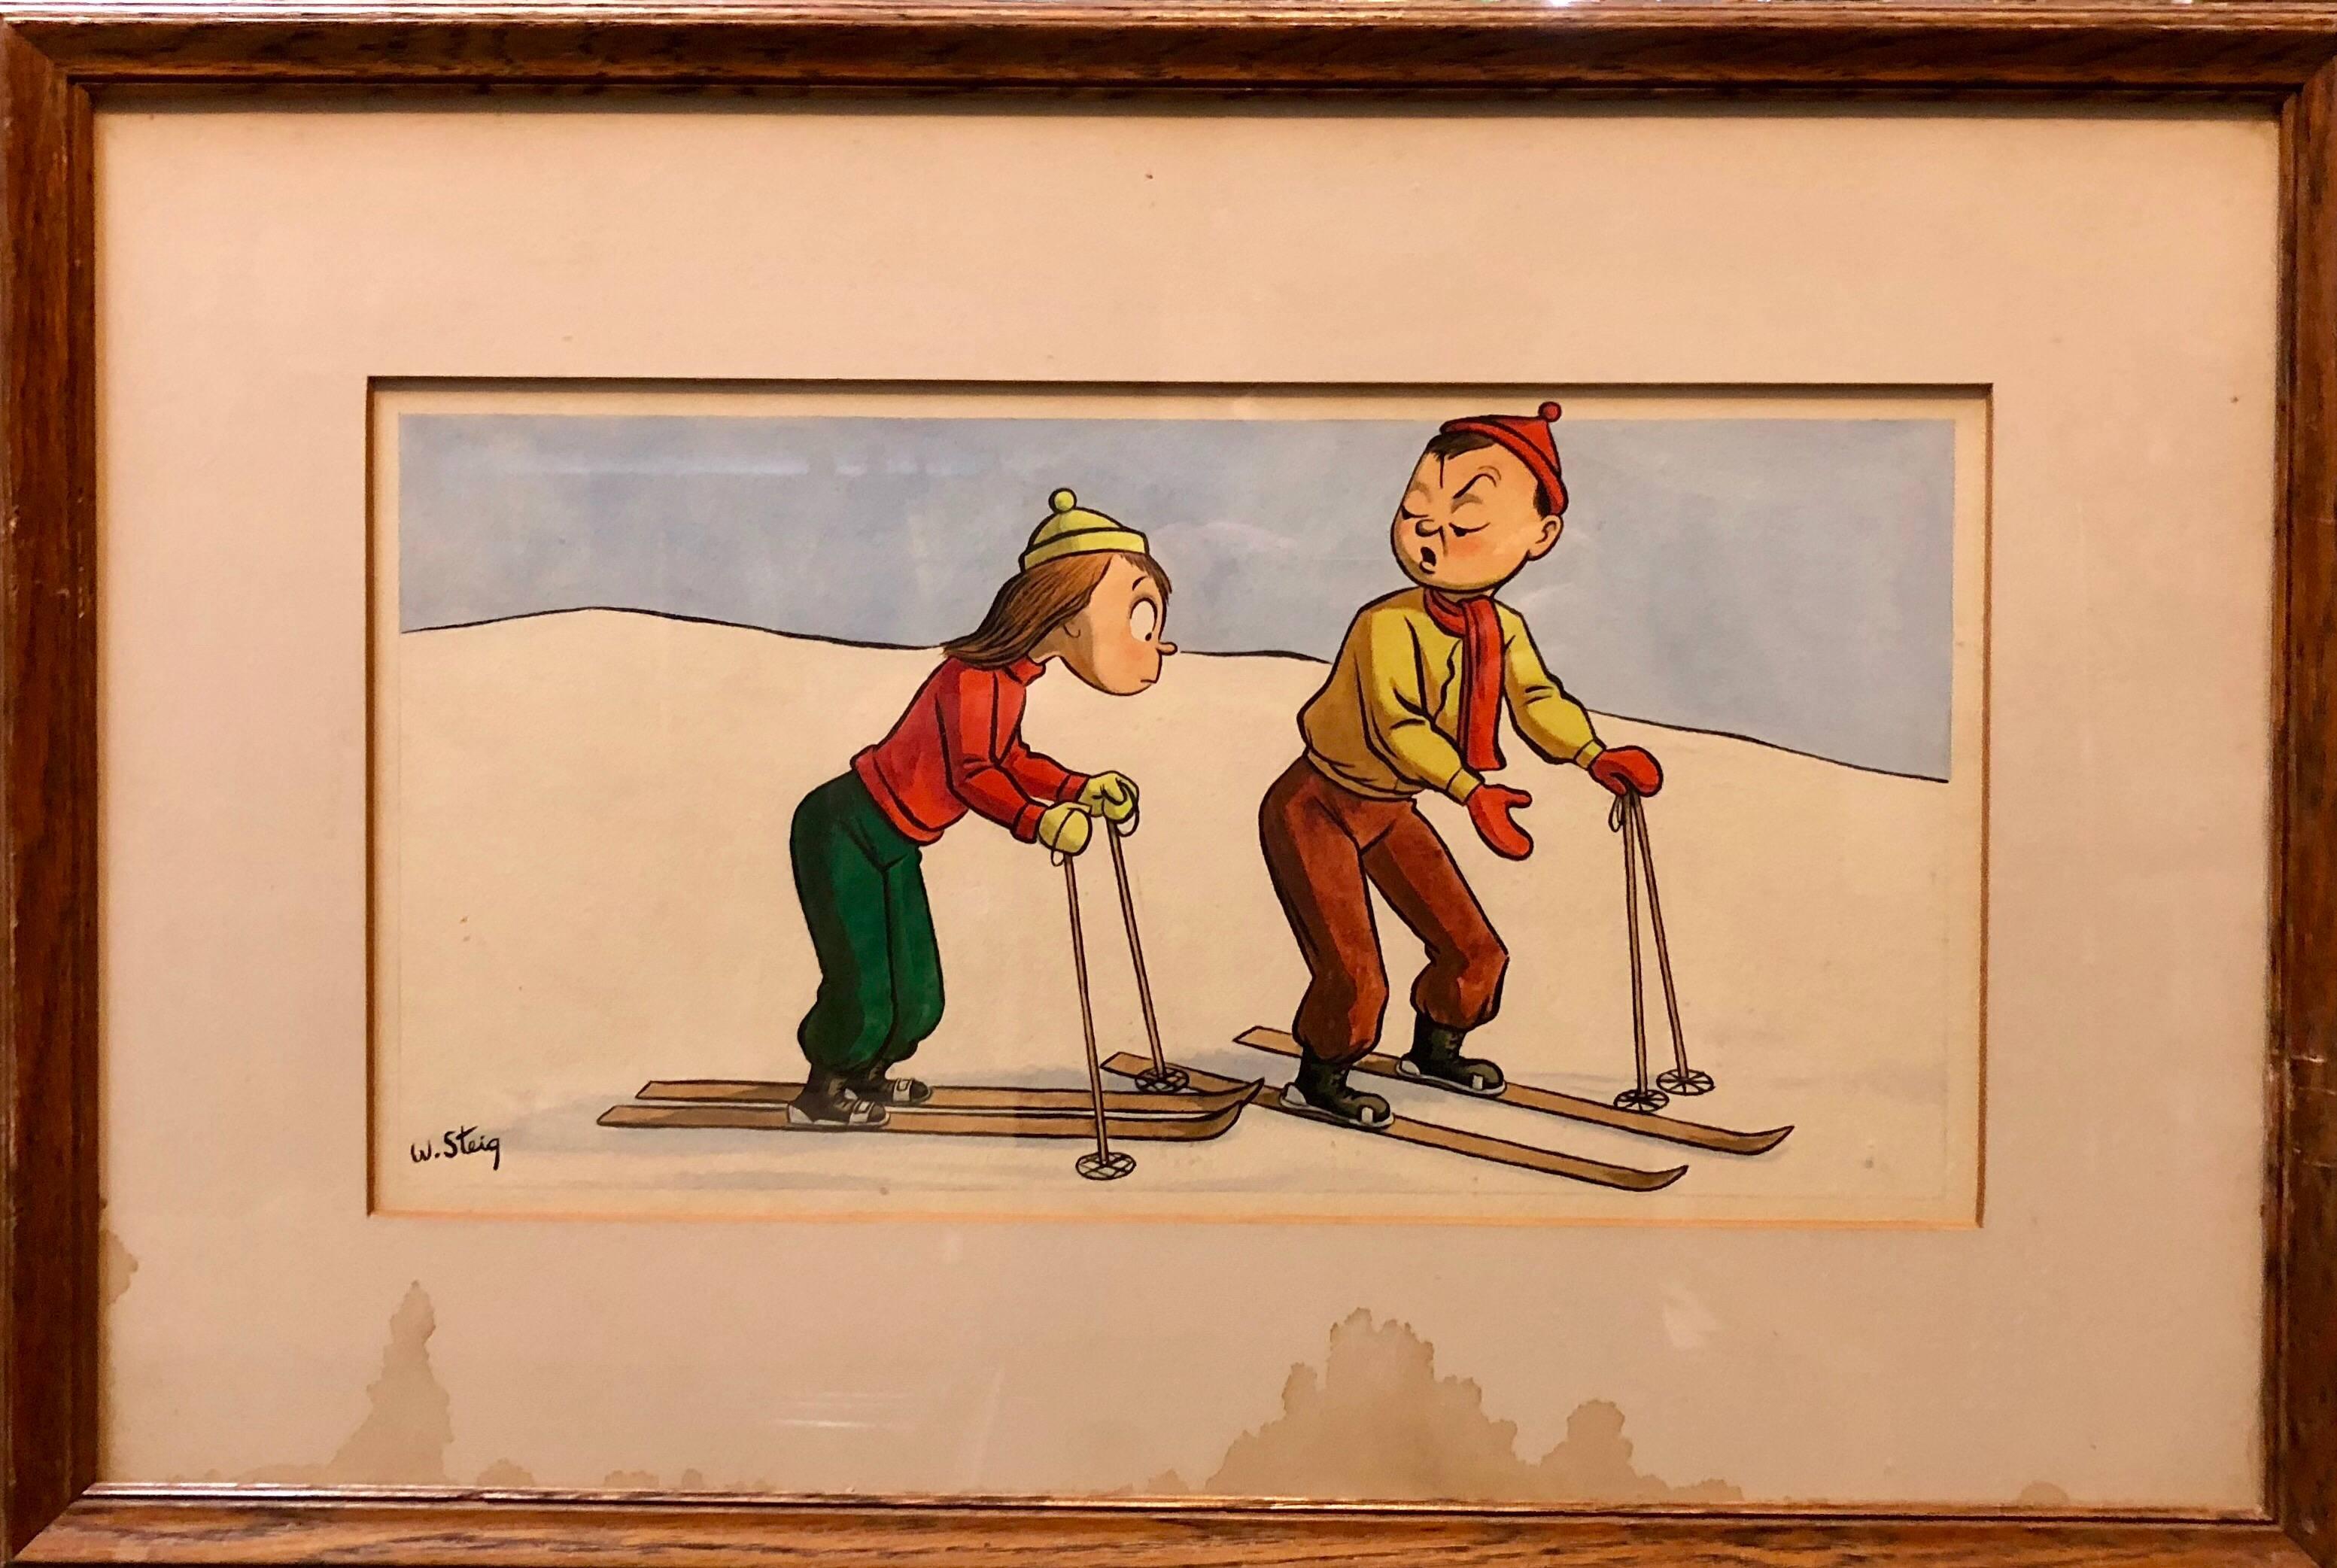 Skurrile Illustration, Skifahren- Cartoon, 1938, Mt Tremblant Ski Lodge, William Steig (Naturalismus), Art, von William Steig (b.1907)